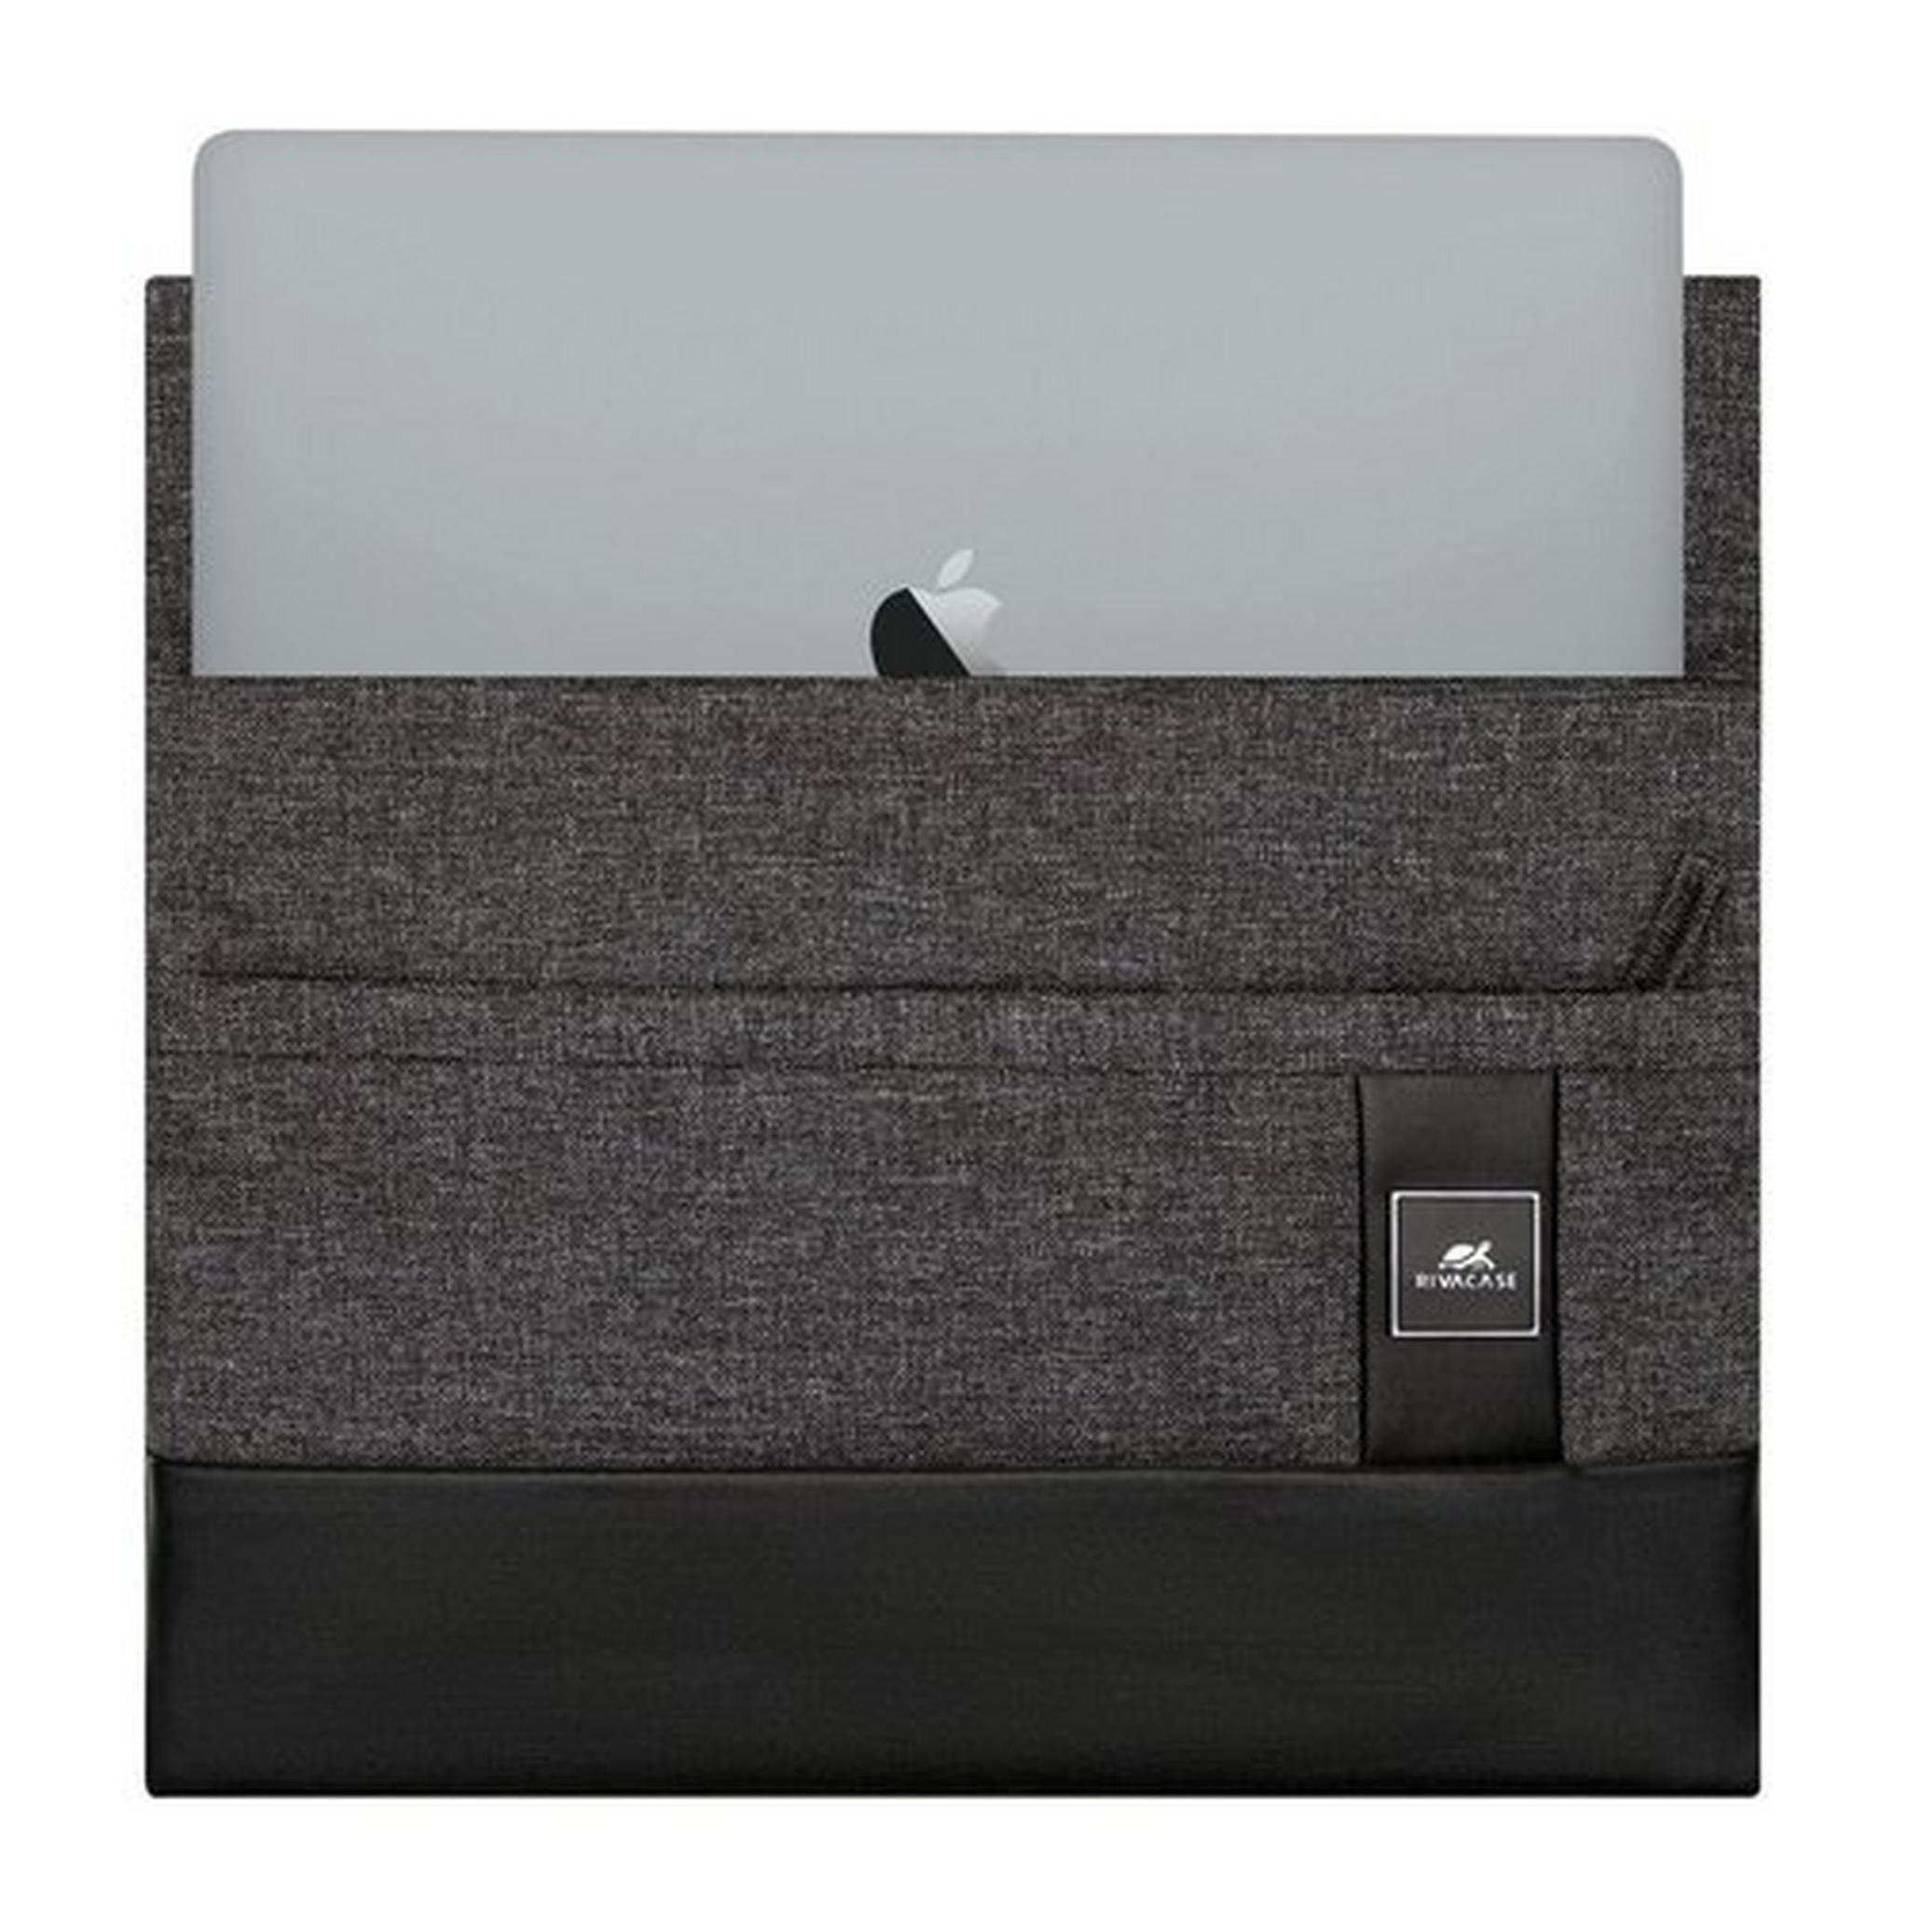 Rivacase 8802 MacBook Pro/MacBook Air 13 Sleeve - Black